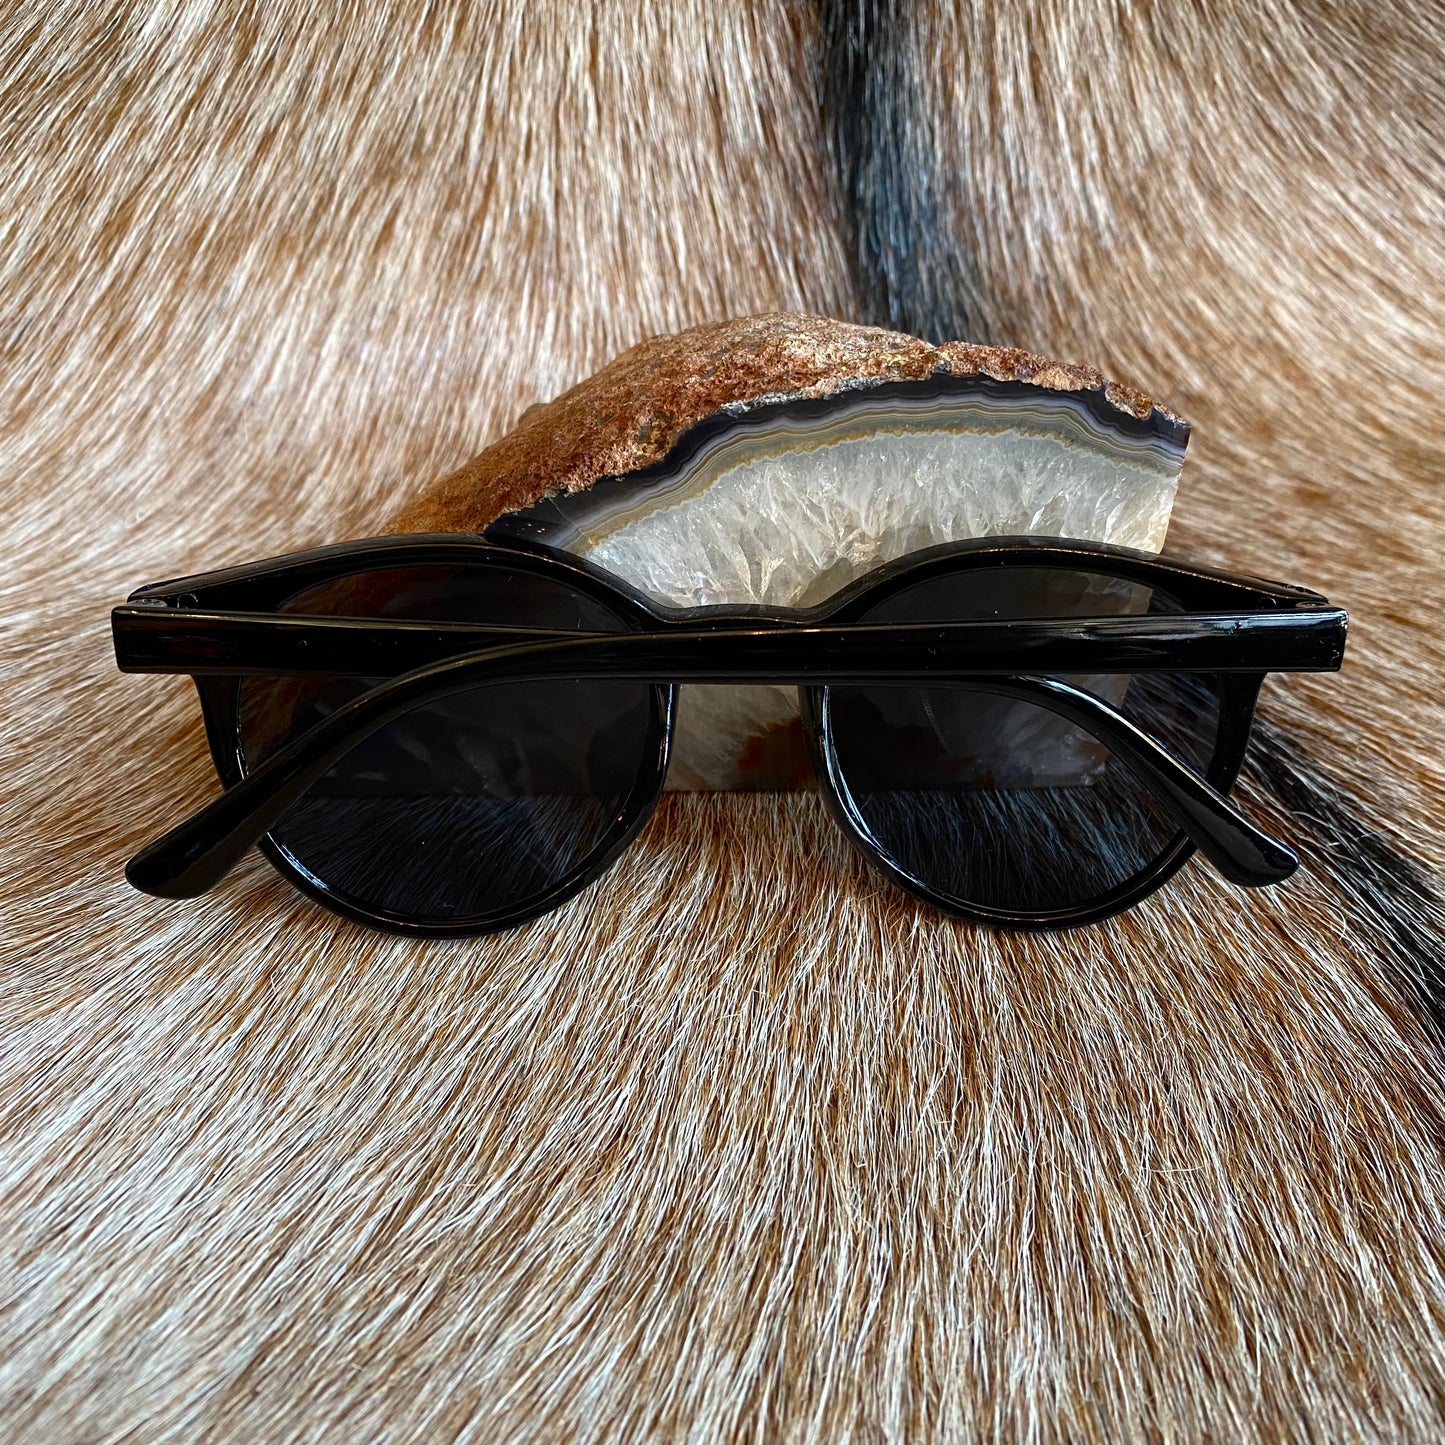 Classic Black Sunglasses